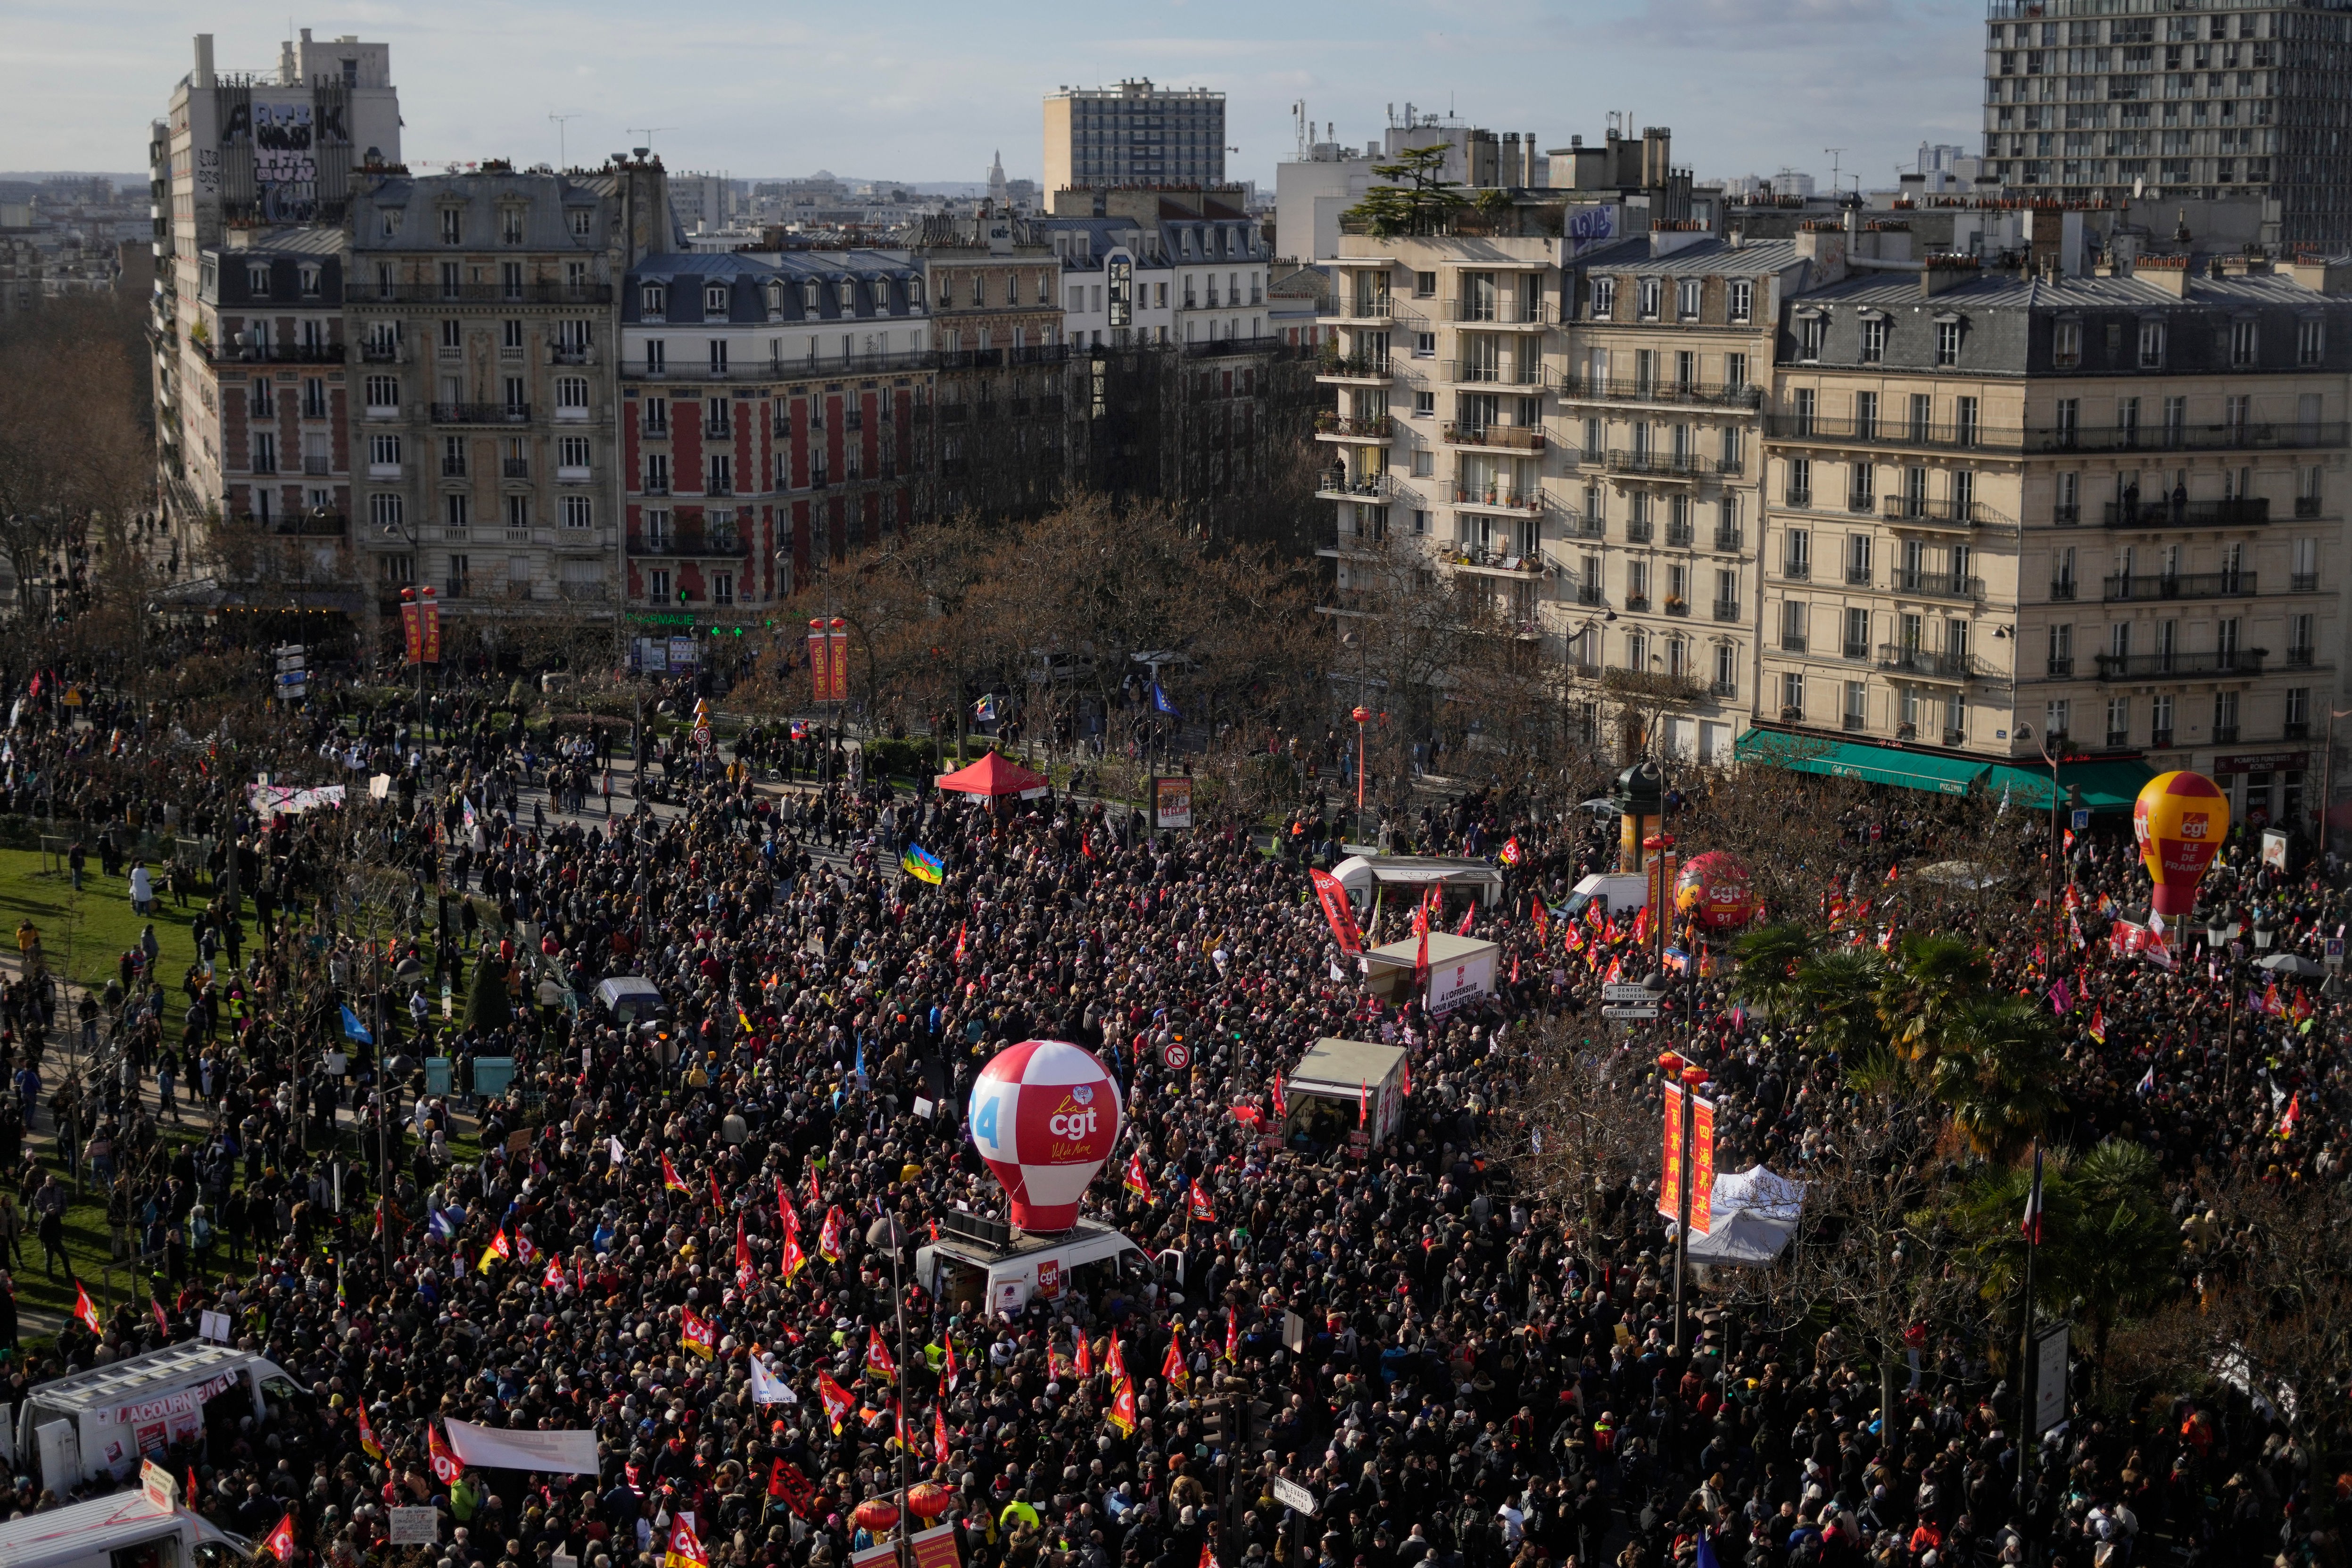 Frankreich - Proteste gegen Rentenreform legen öffentliches Leben lahm